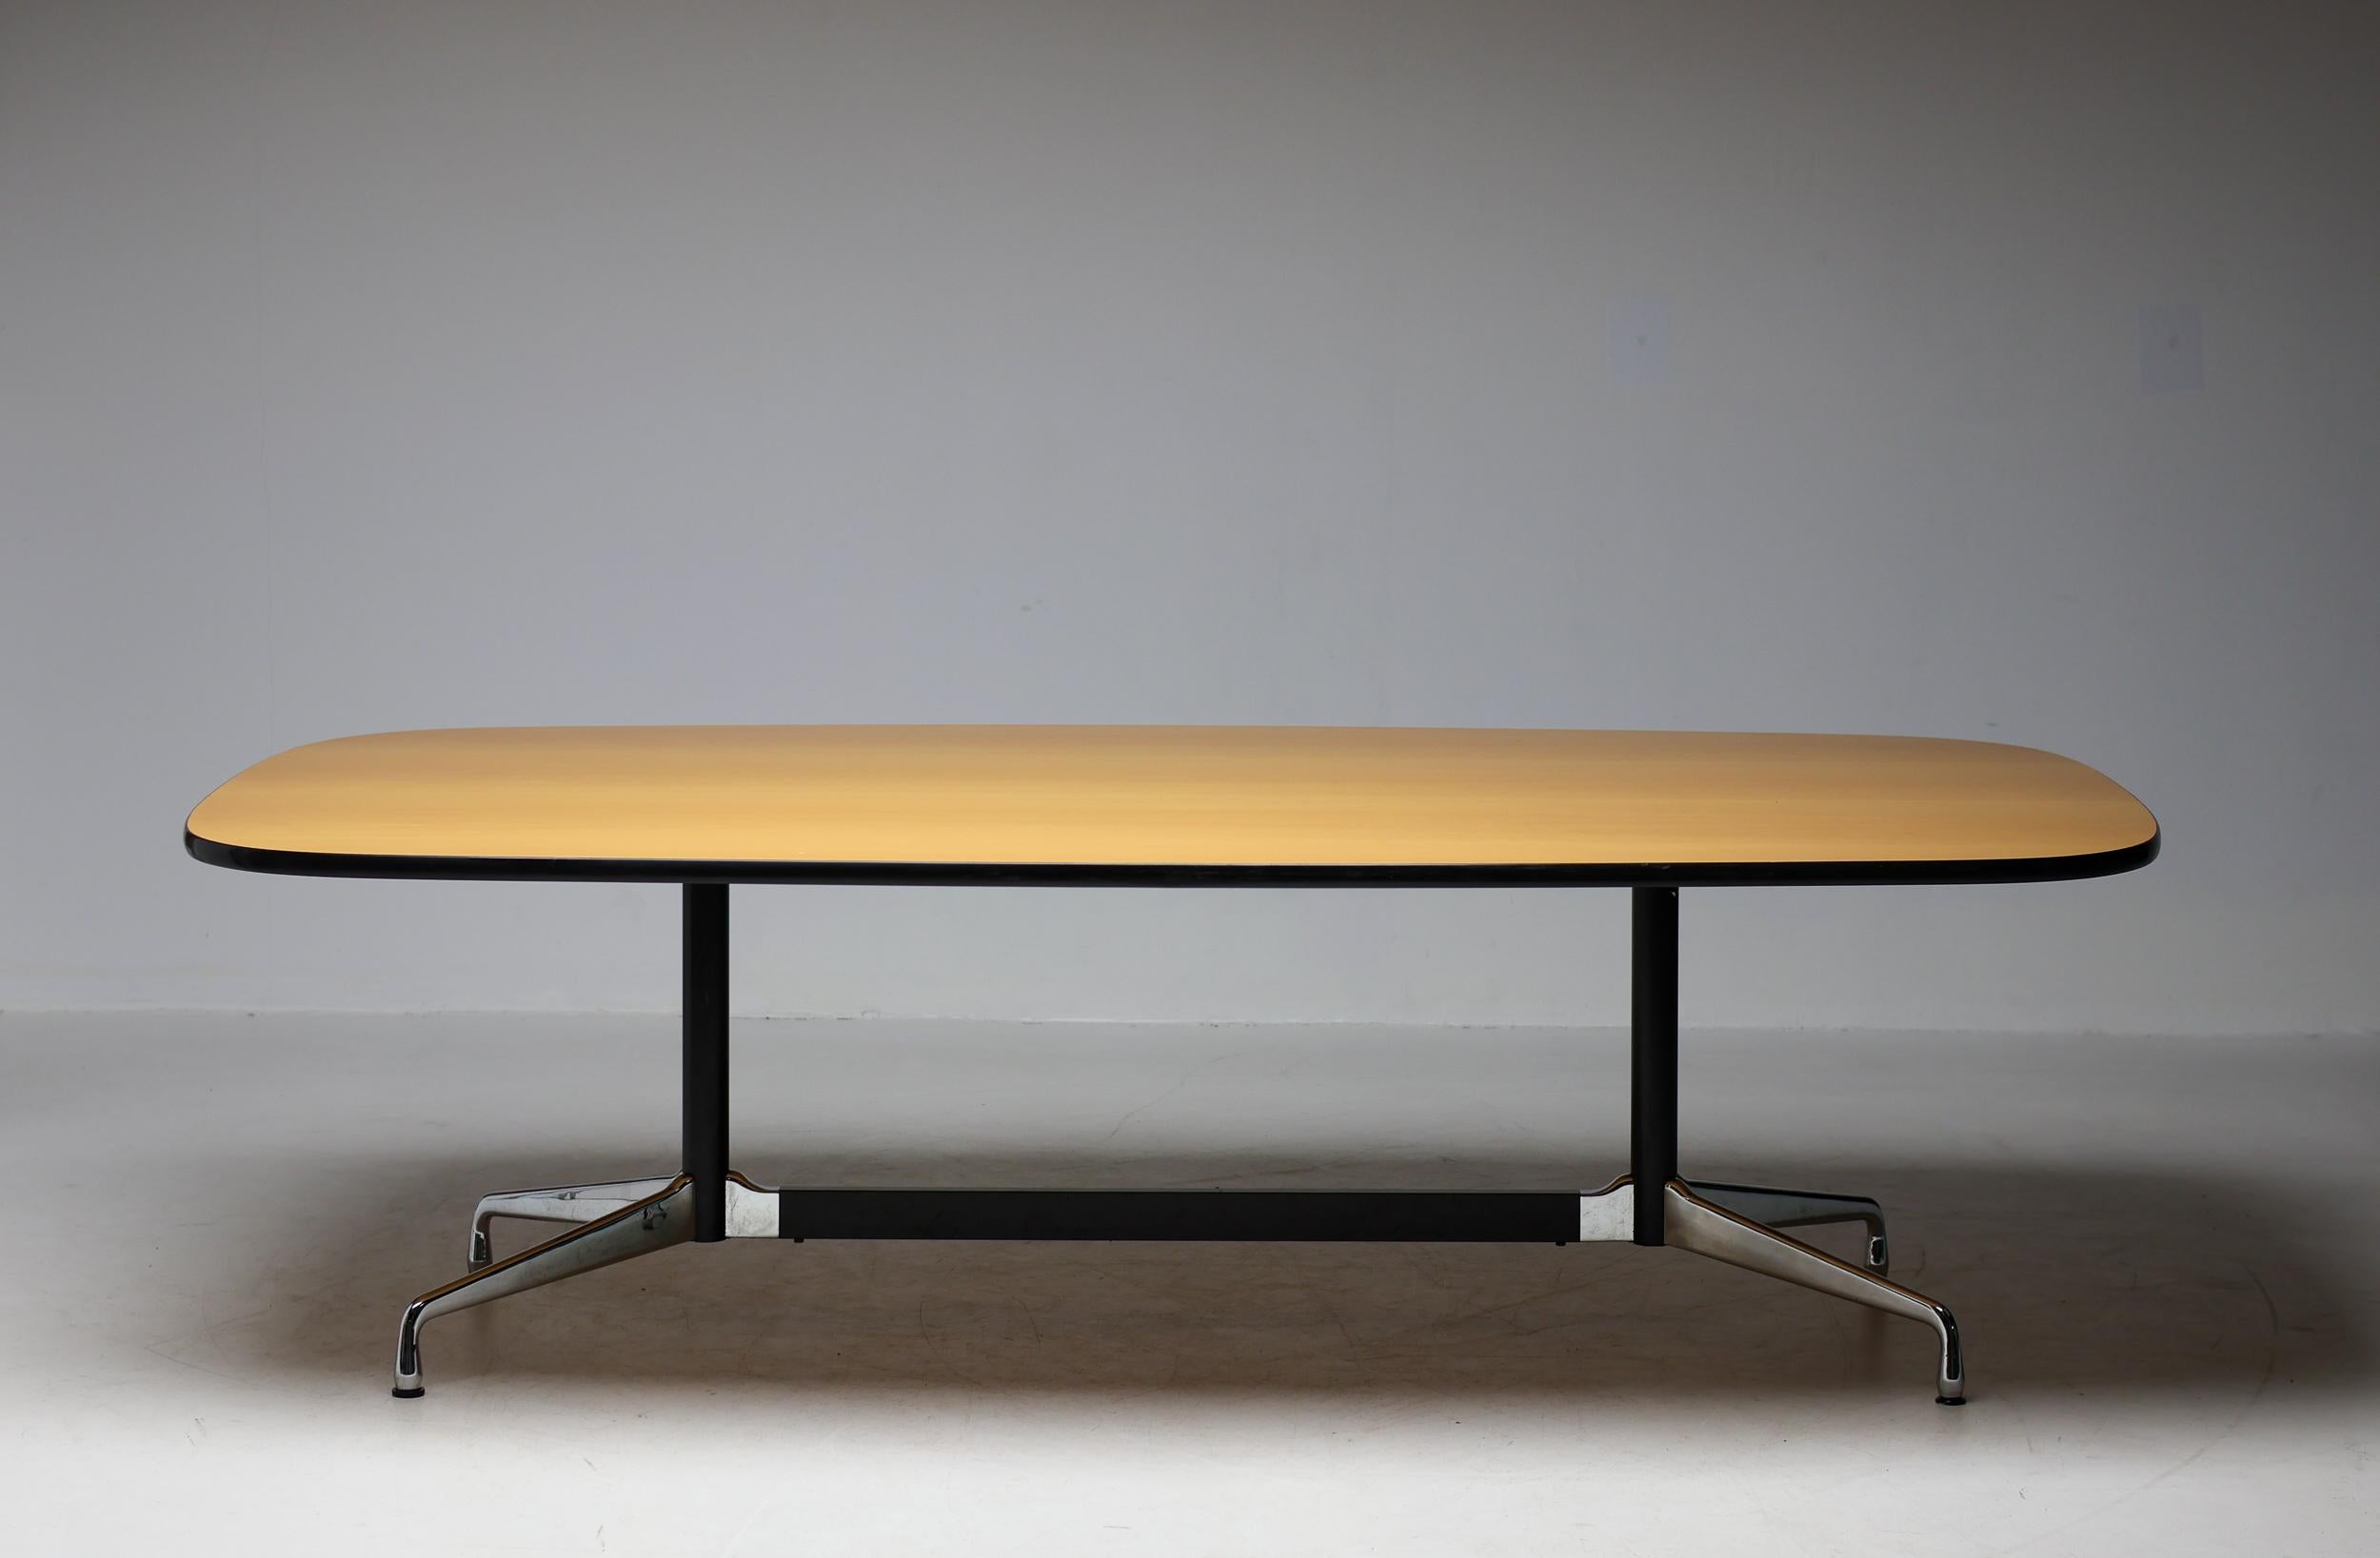 Großer Charles & Ray Eames Segmented Base Konferenztisch von Vitra aus dem Jahr 2001.
Wunderschöne einteilige Tischplatte aus Buchenfurnier, gekennzeichnet mit einem Label mit Produktionsdatum.
Der Sockel ist mit einem Vitra Label versehen, wie